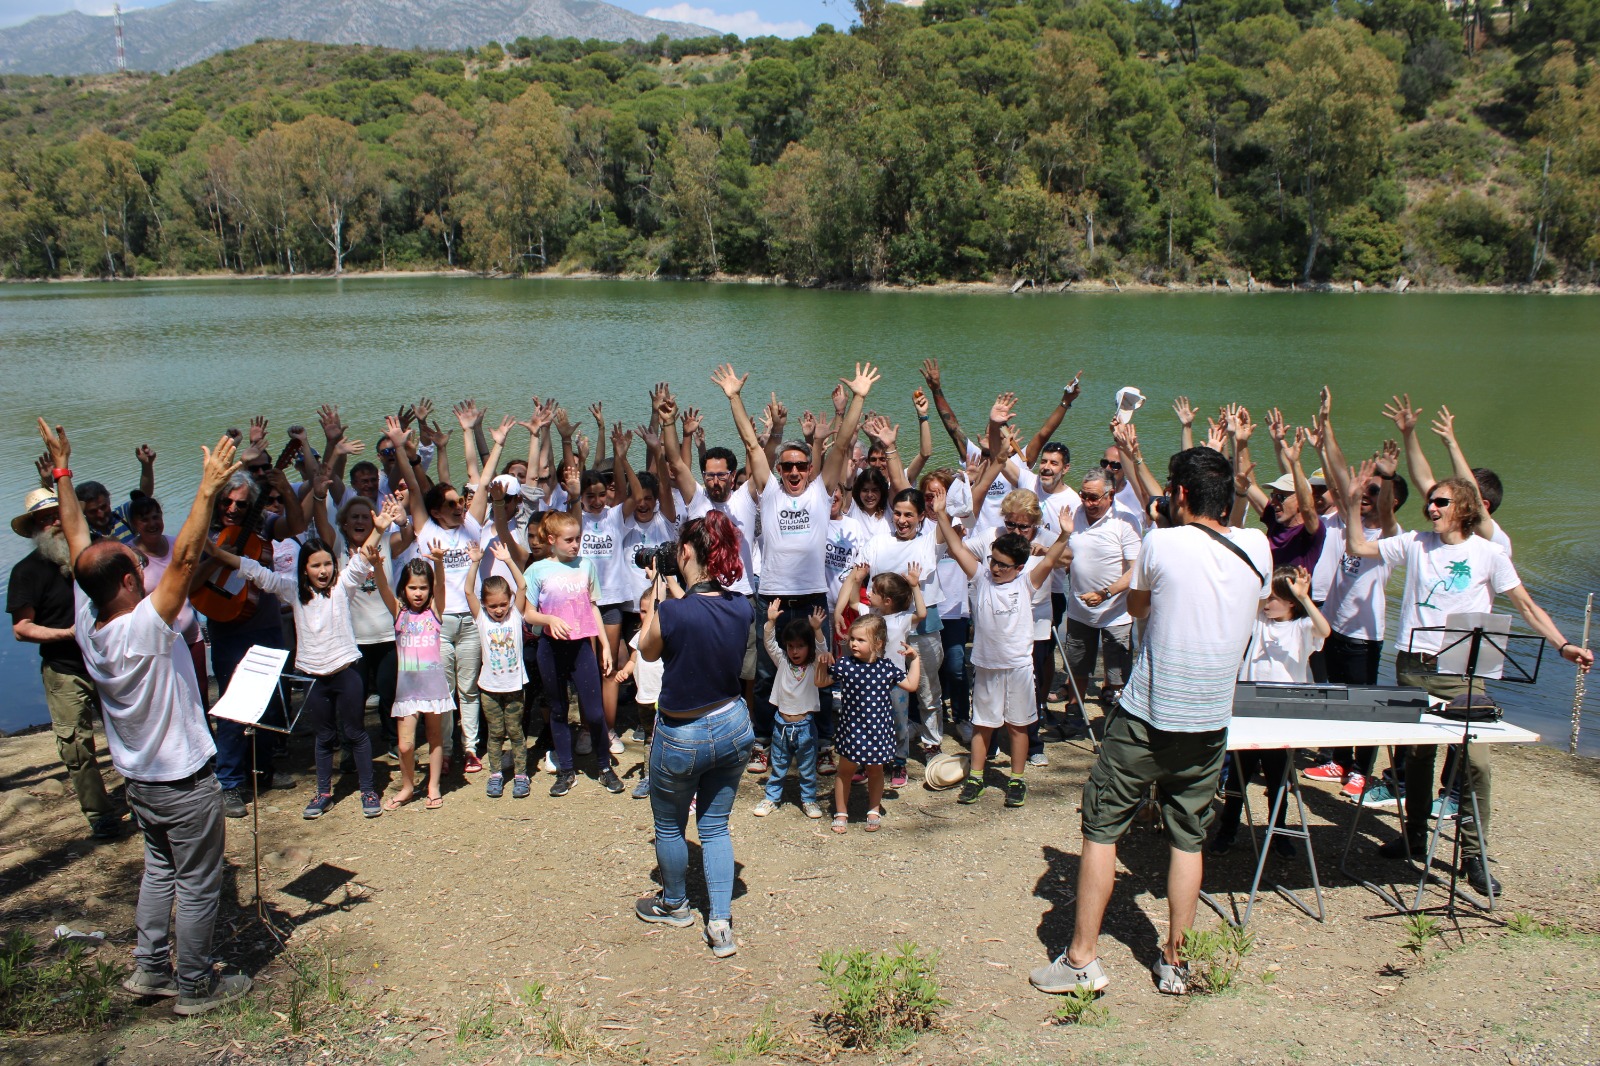 Impulsa Ciudad celebra la obtención de las firmas en el lago de las Tortugas